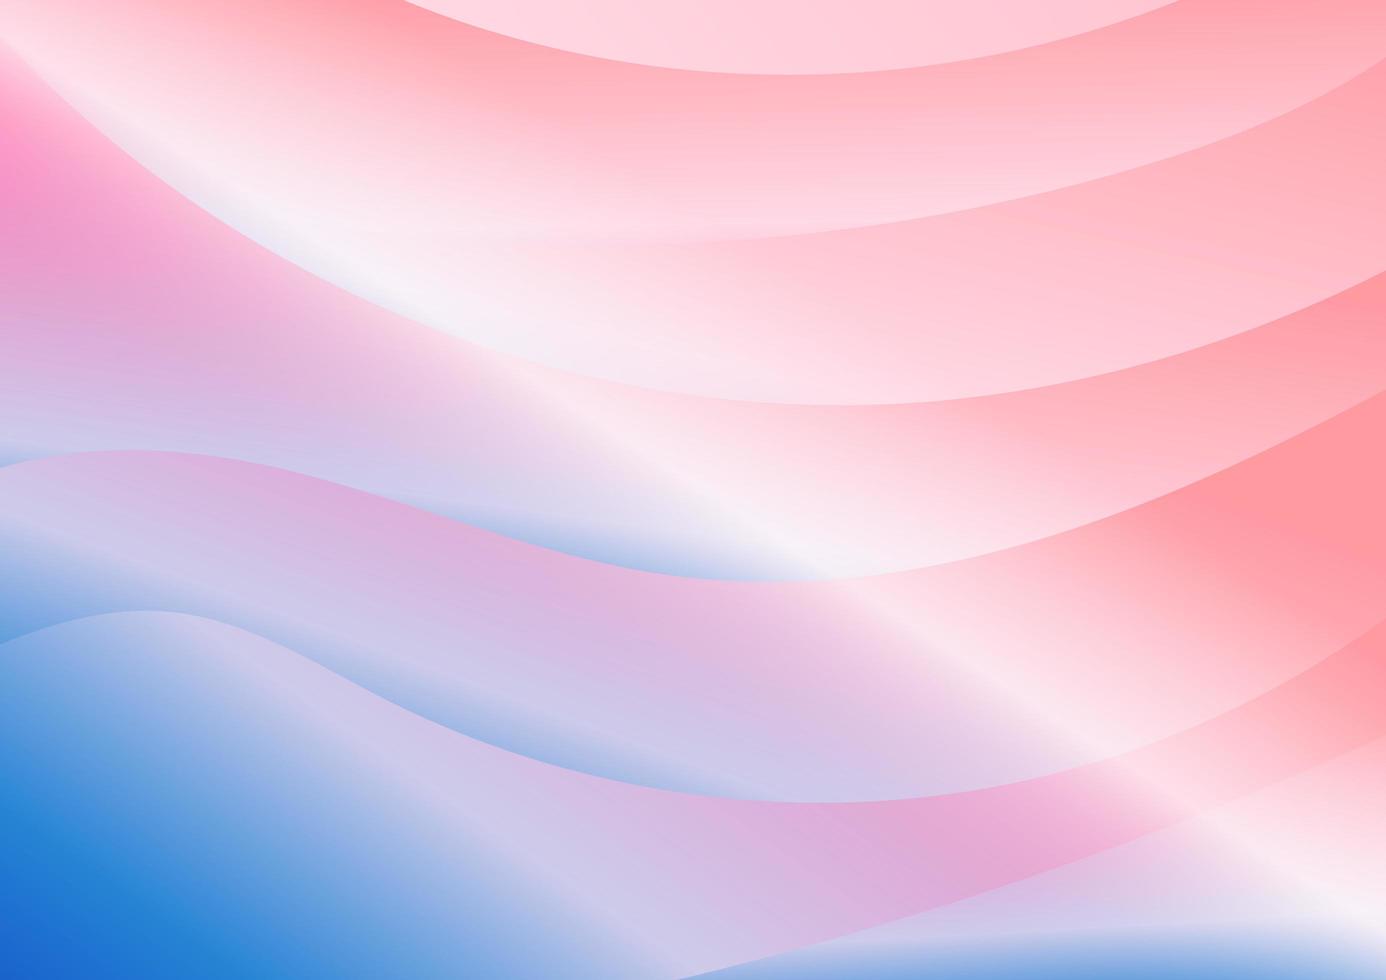 El color de tono azul moderno abstracto y la curva rosada se superponen concepto mínimo de fondo vector